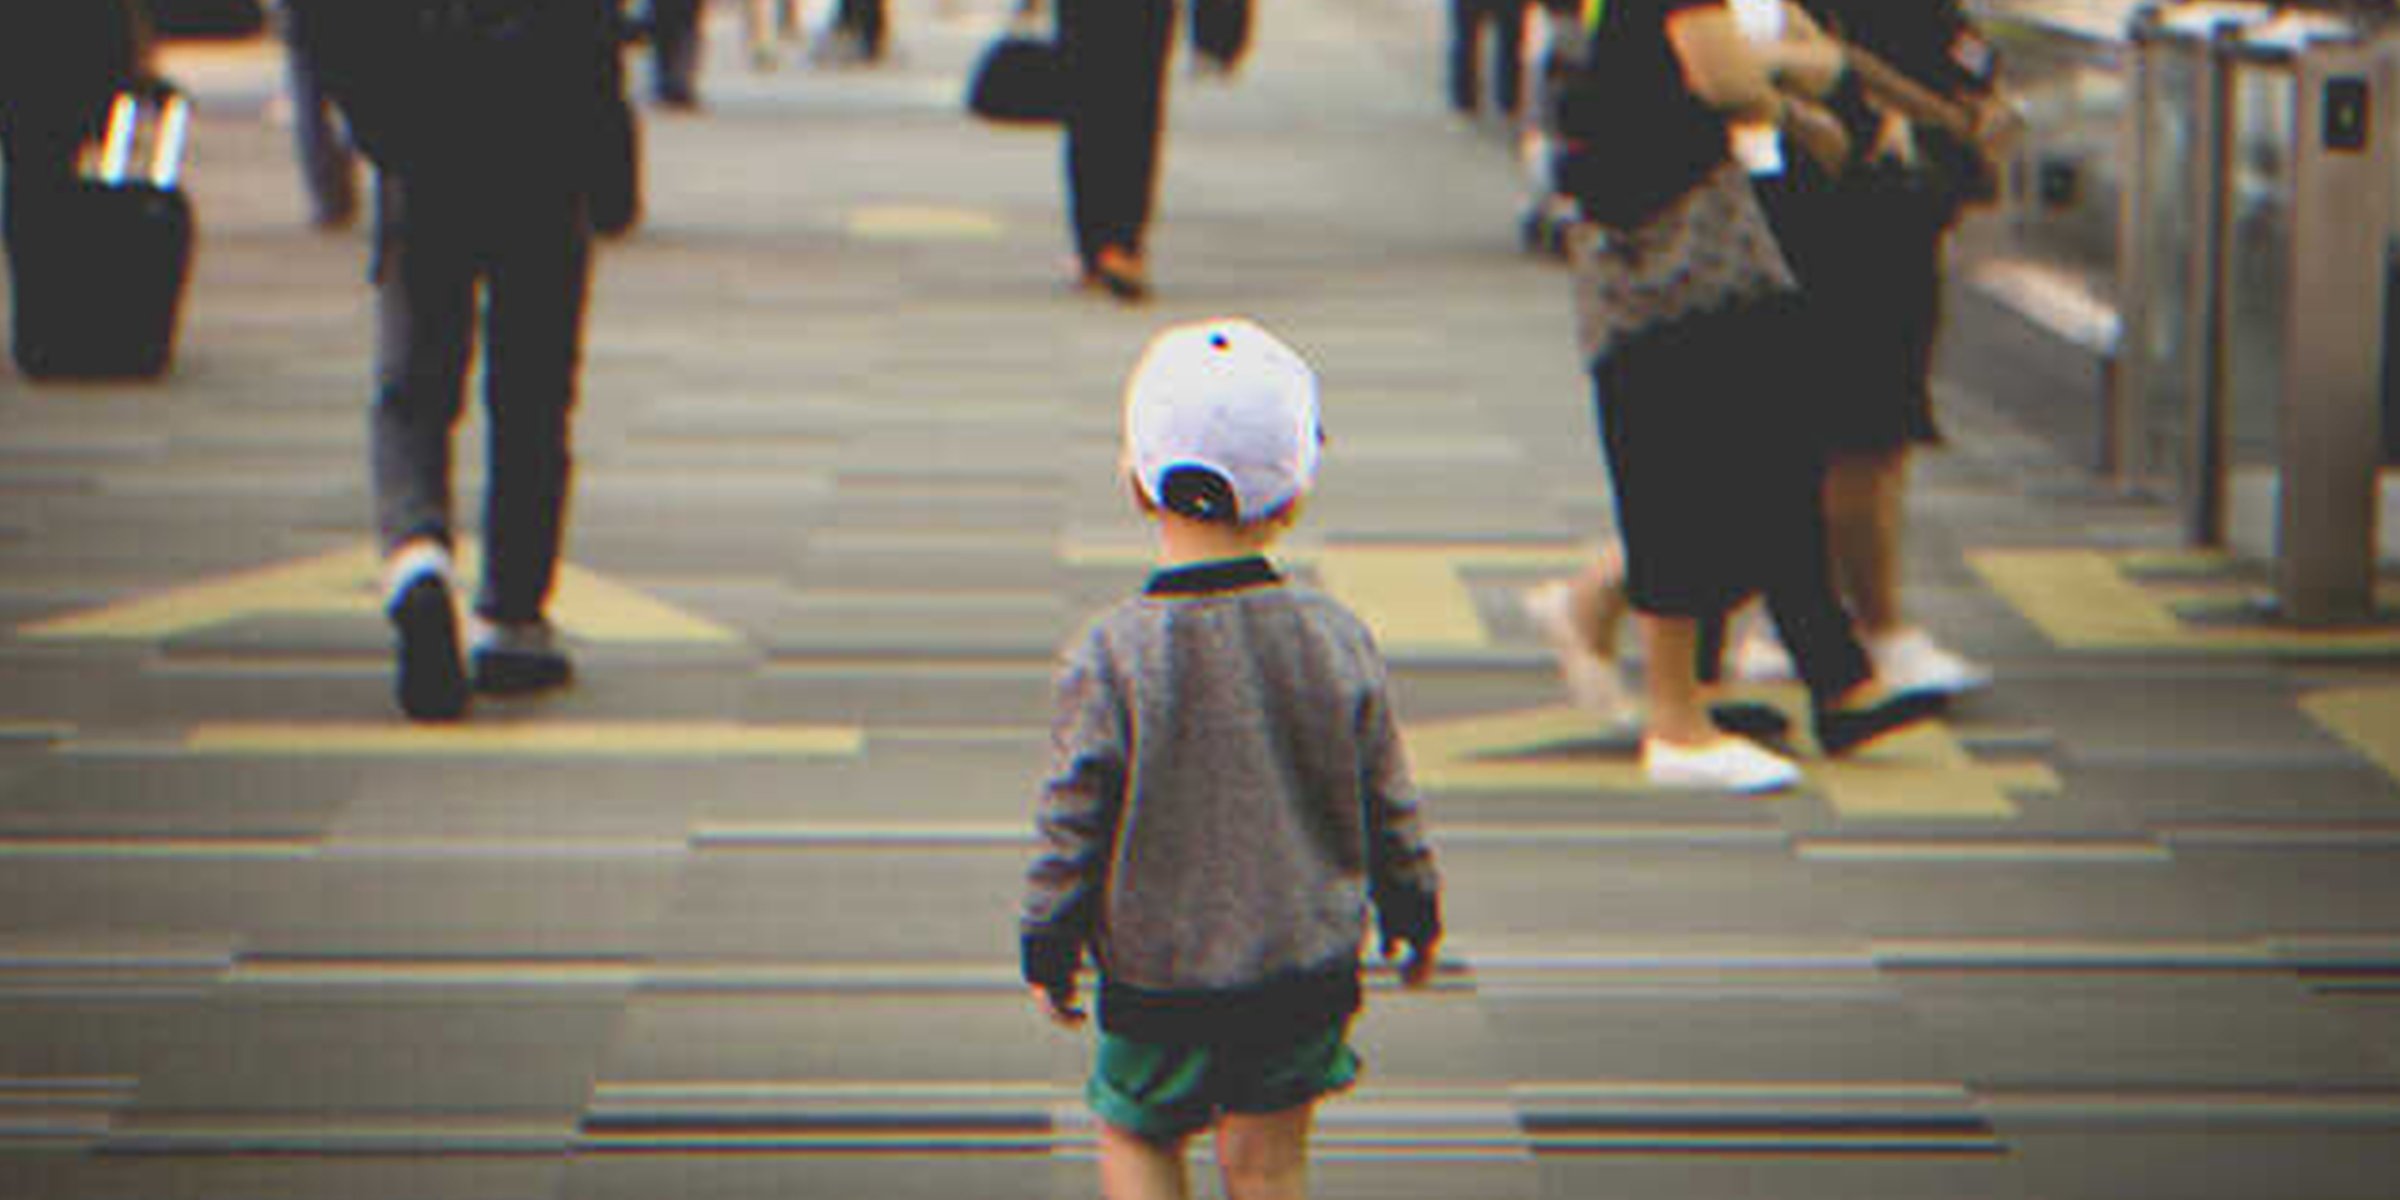 Little boy walking alone on the street | Source: Shutterstock